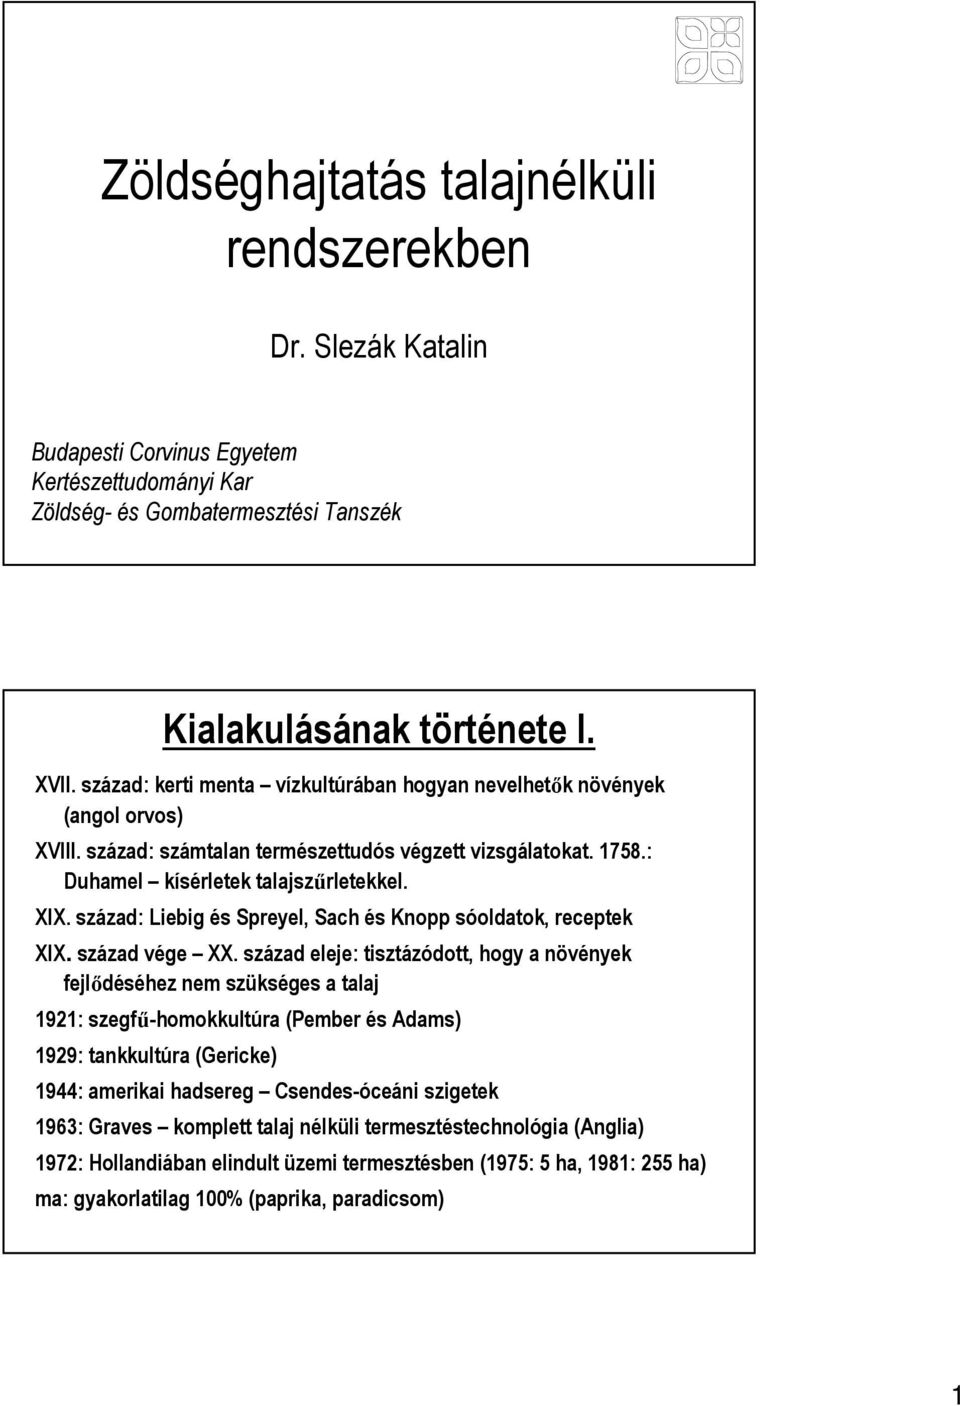 Budapesti Corvinus Egyetem Kertészettudományi Kar Zöldség- és  Gombatermesztési Tanszék - PDF Ingyenes letöltés